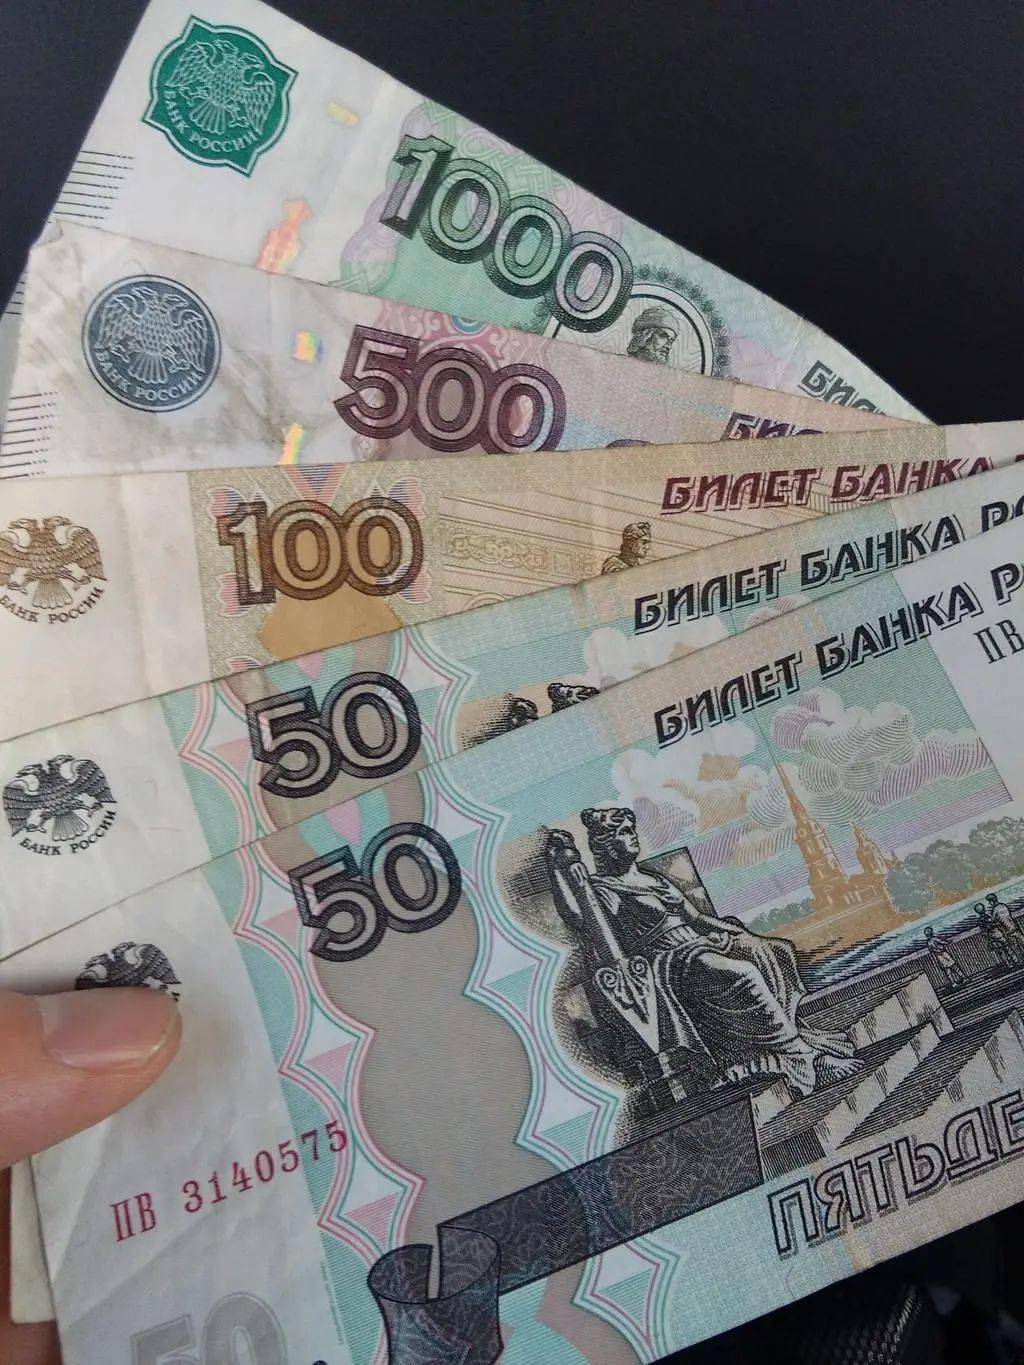 俄罗斯大规模抛售人民币,难道中俄合作要停顿了?